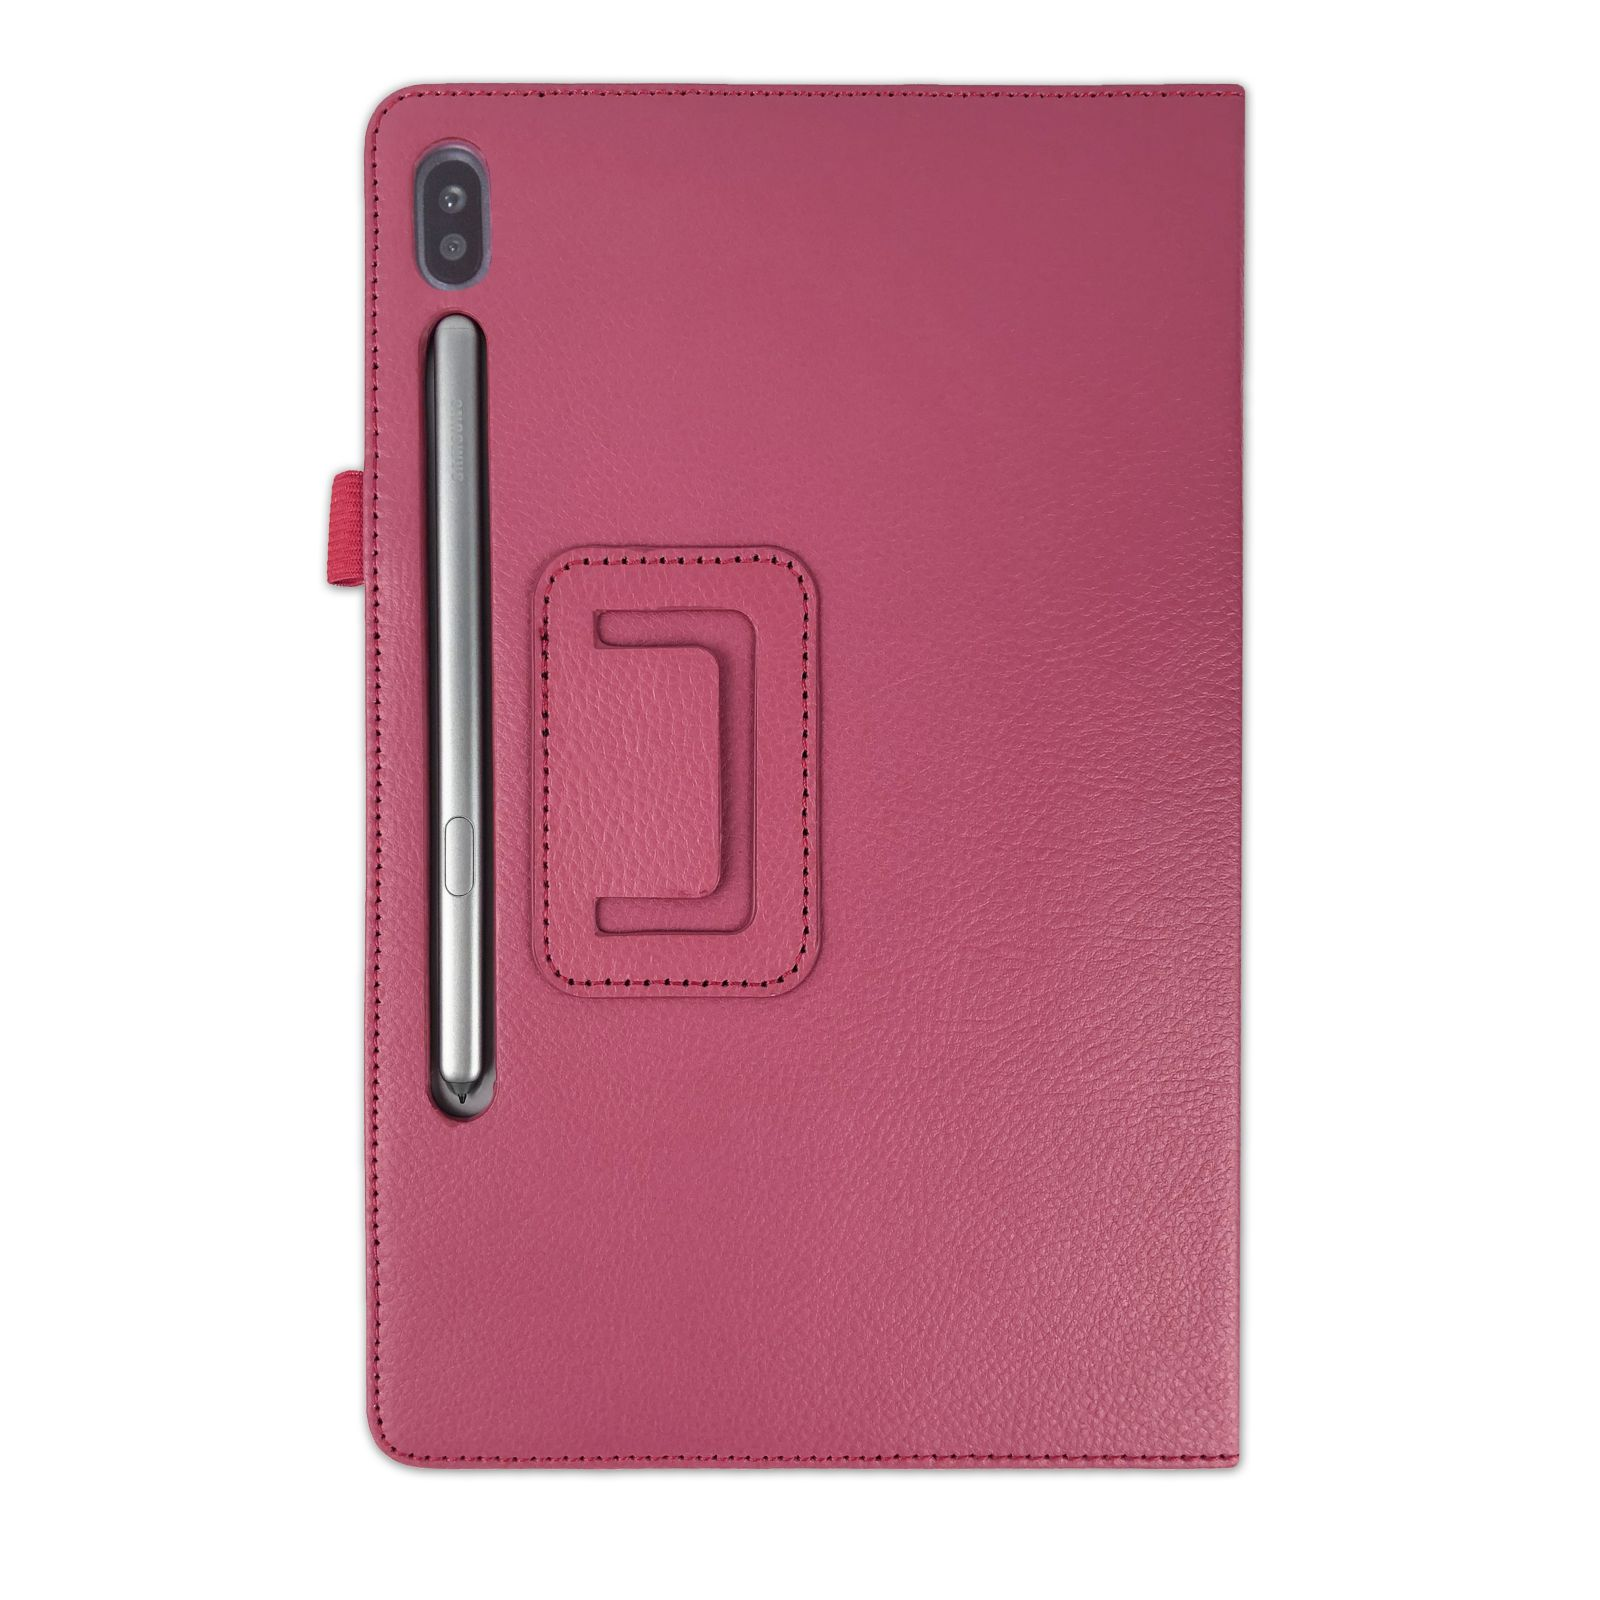 LOBWERK Hülle Schutzhülle Bookcover für Tab Kunstleder, SM-T860 S6 Zoll 10.5 Samsung Pink Galaxy